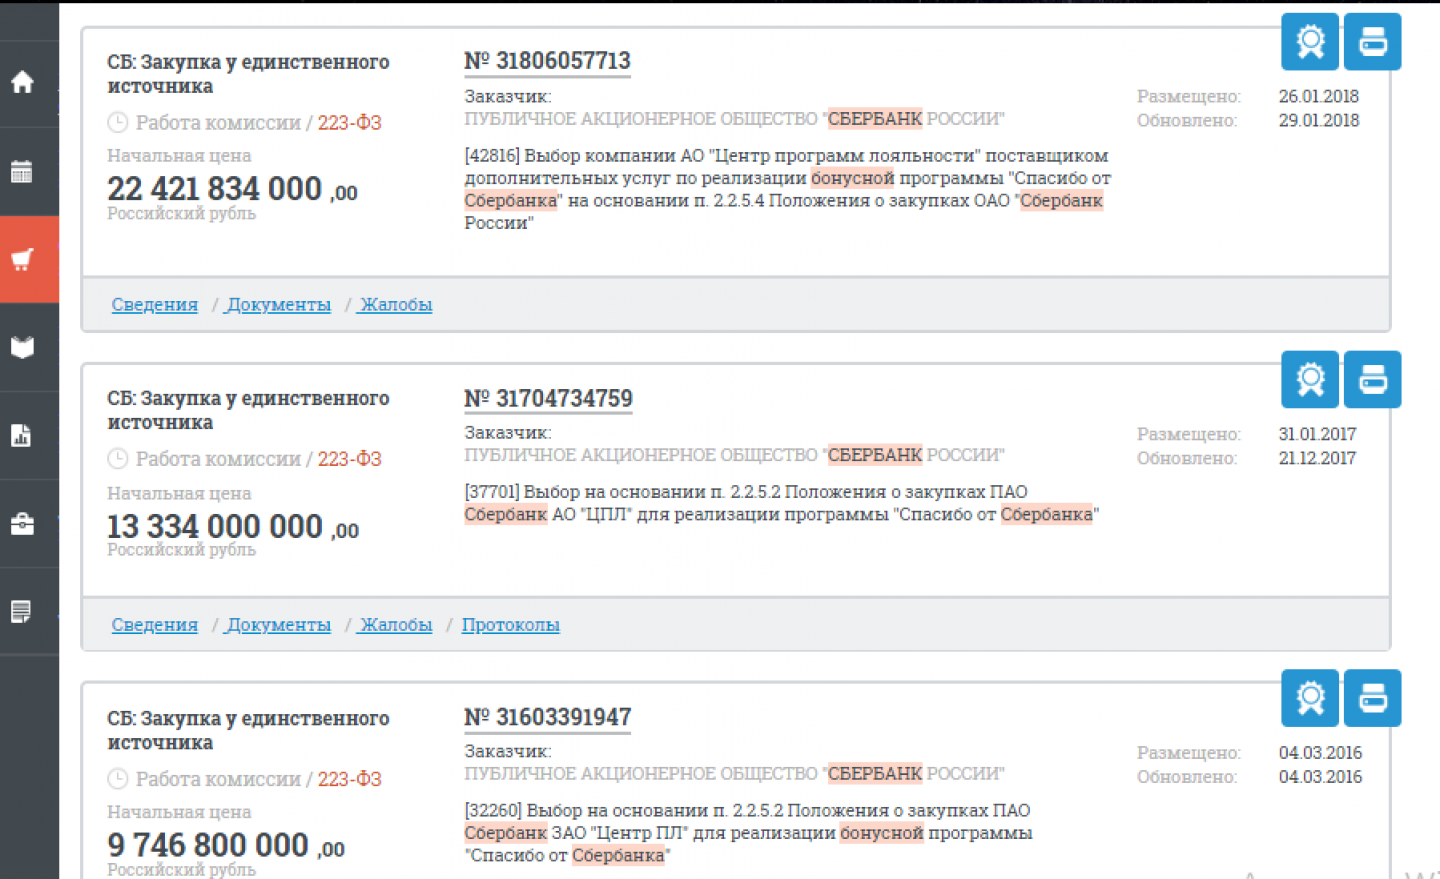 На ресурсе zakupki.gov.ru видно, что банк ежегодно увеличивает бюджет на бонусную систему.